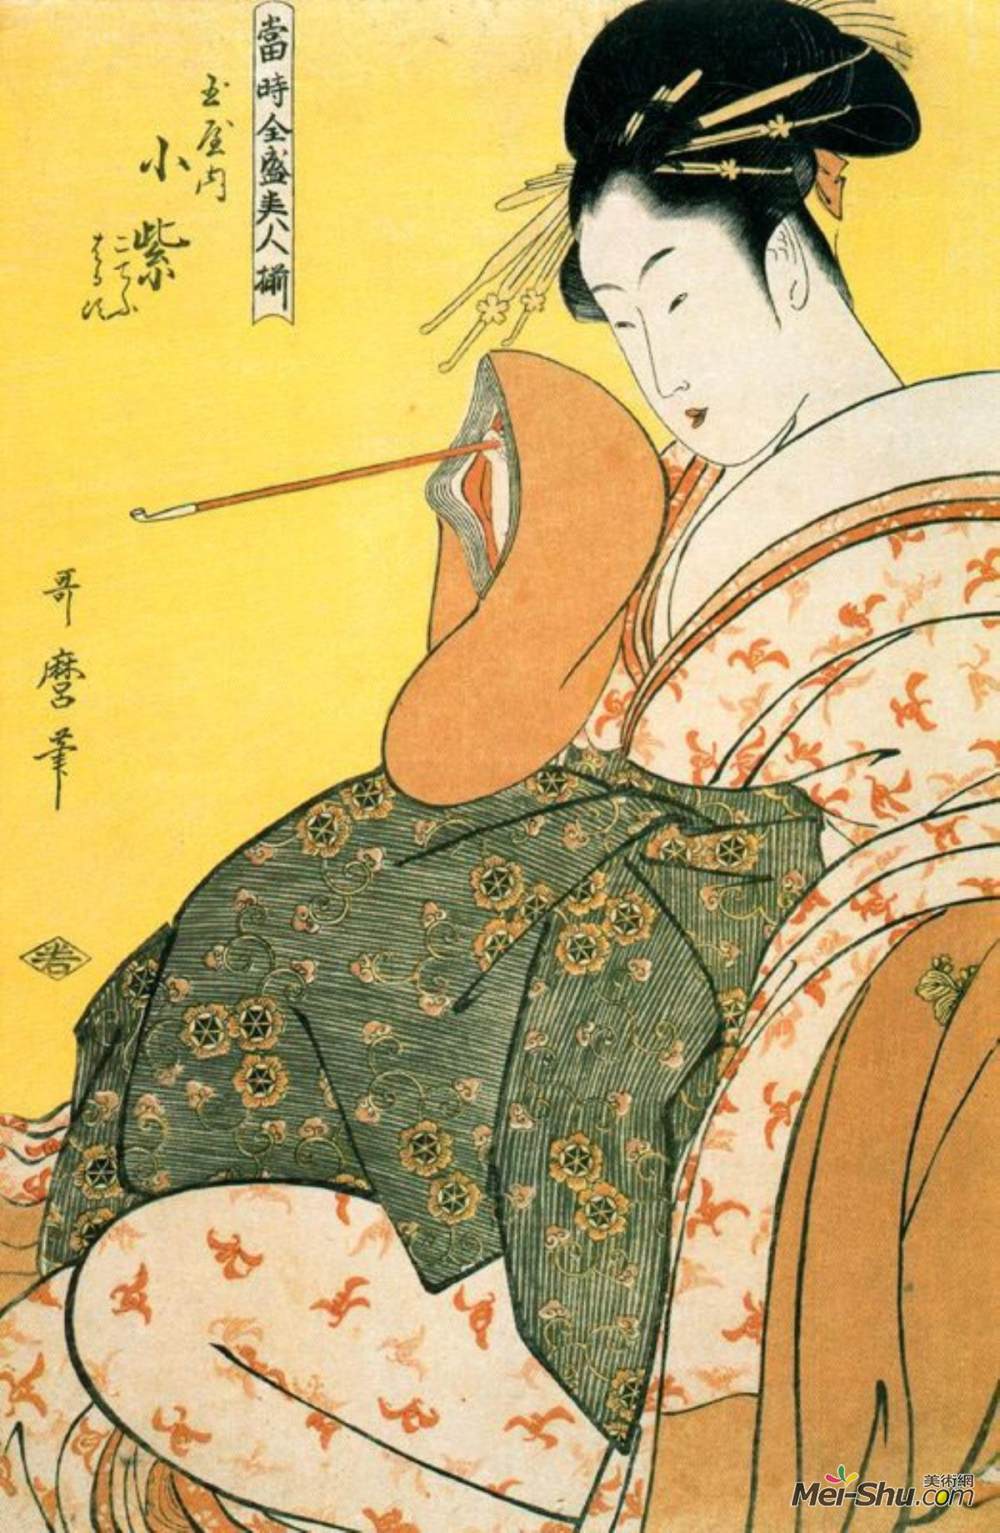 喜多川歌麿(Kitagawa Utamaro)高清作品:Komurasaki of the Tamaya with 